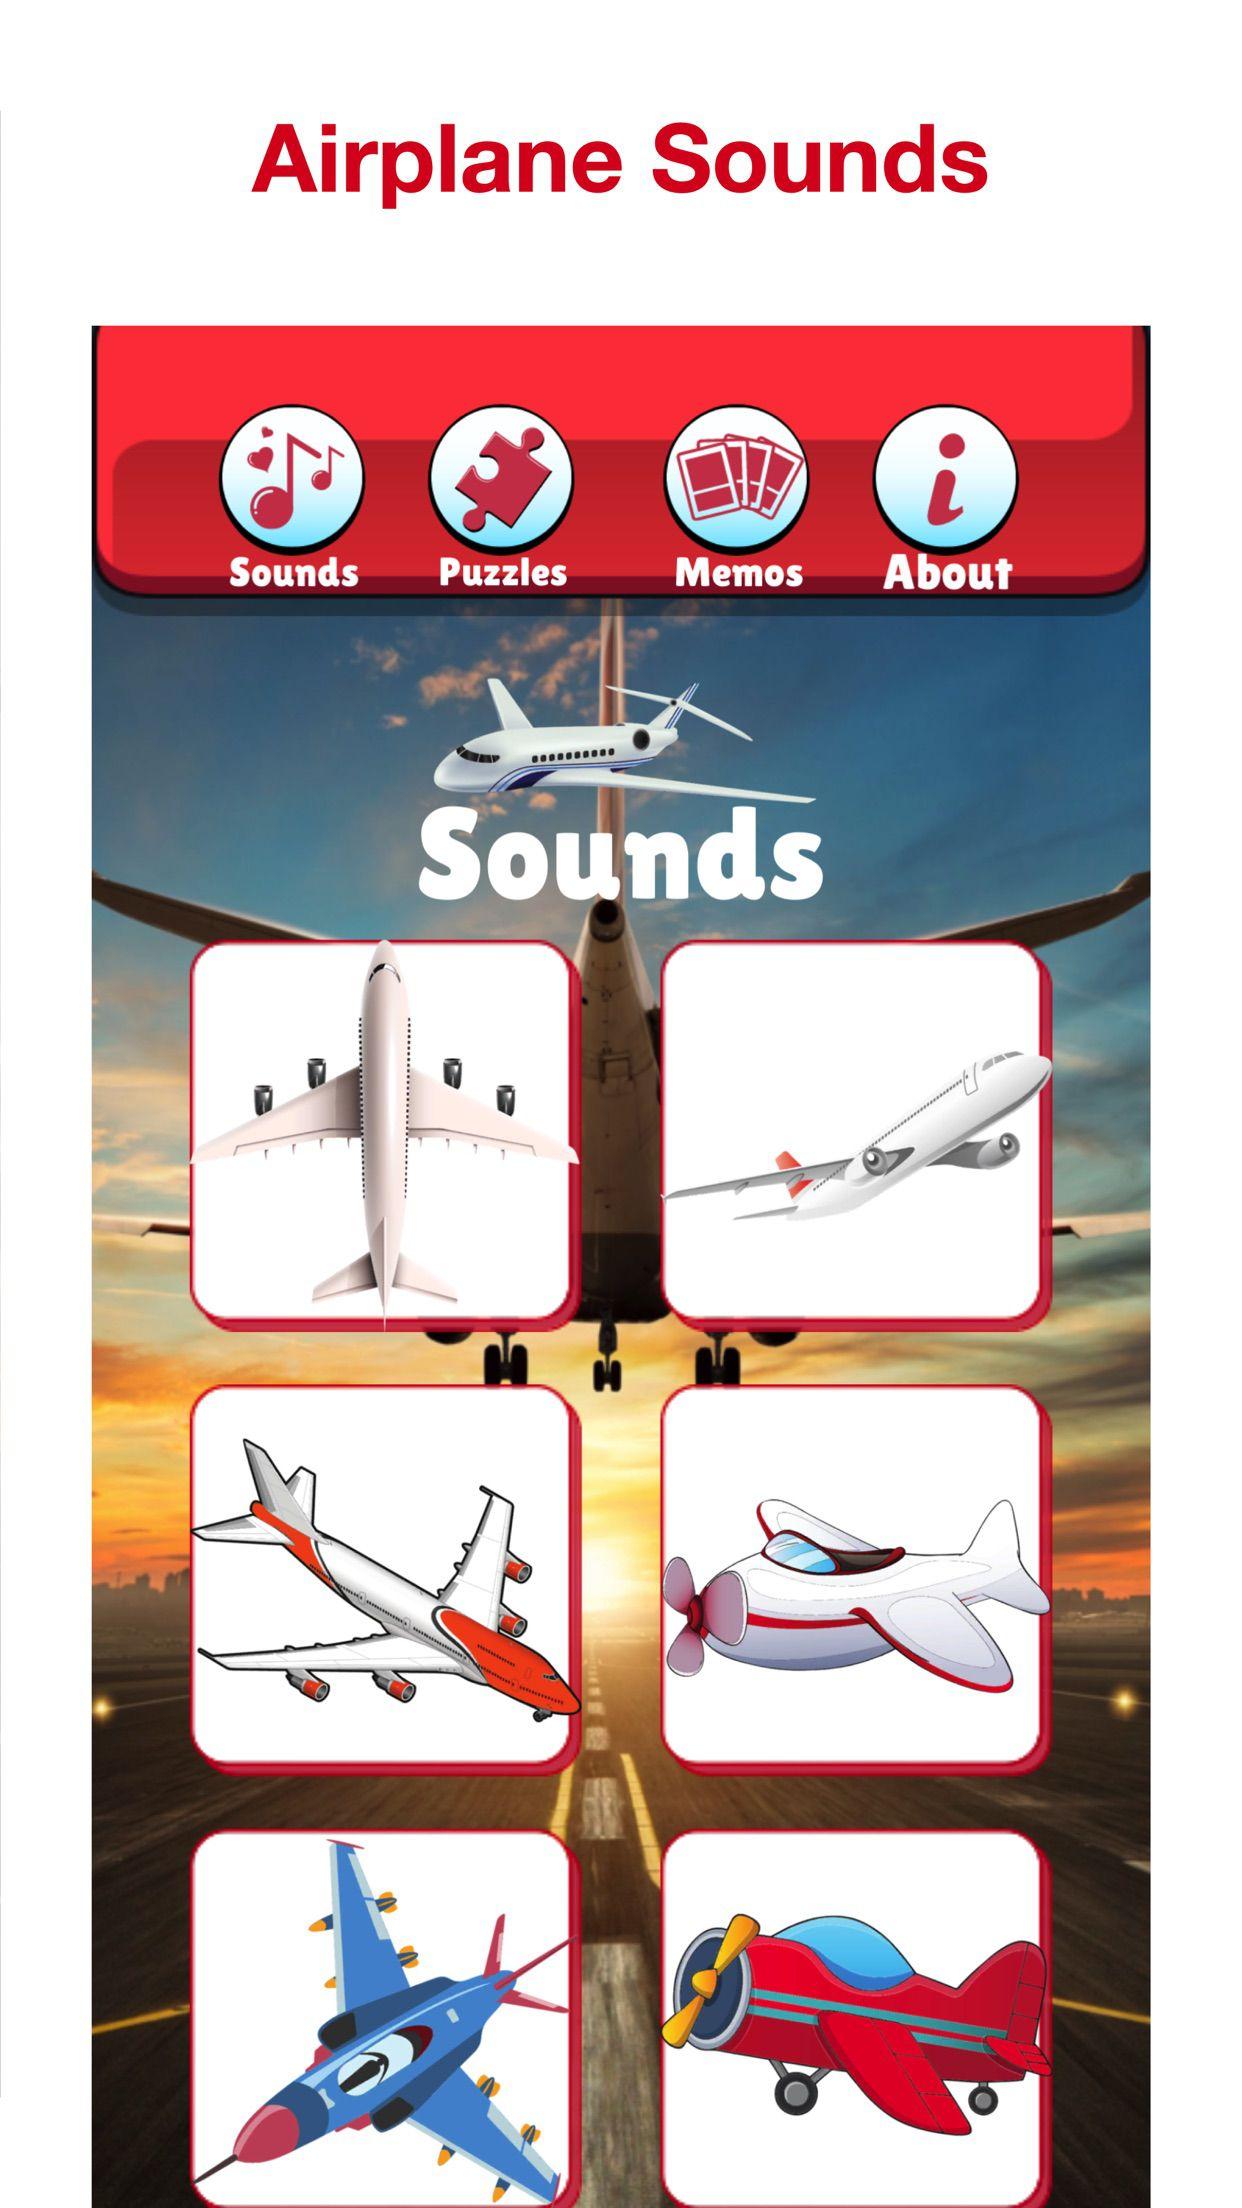 Jogo de Avião crianças aviões - Baixar APK para Android